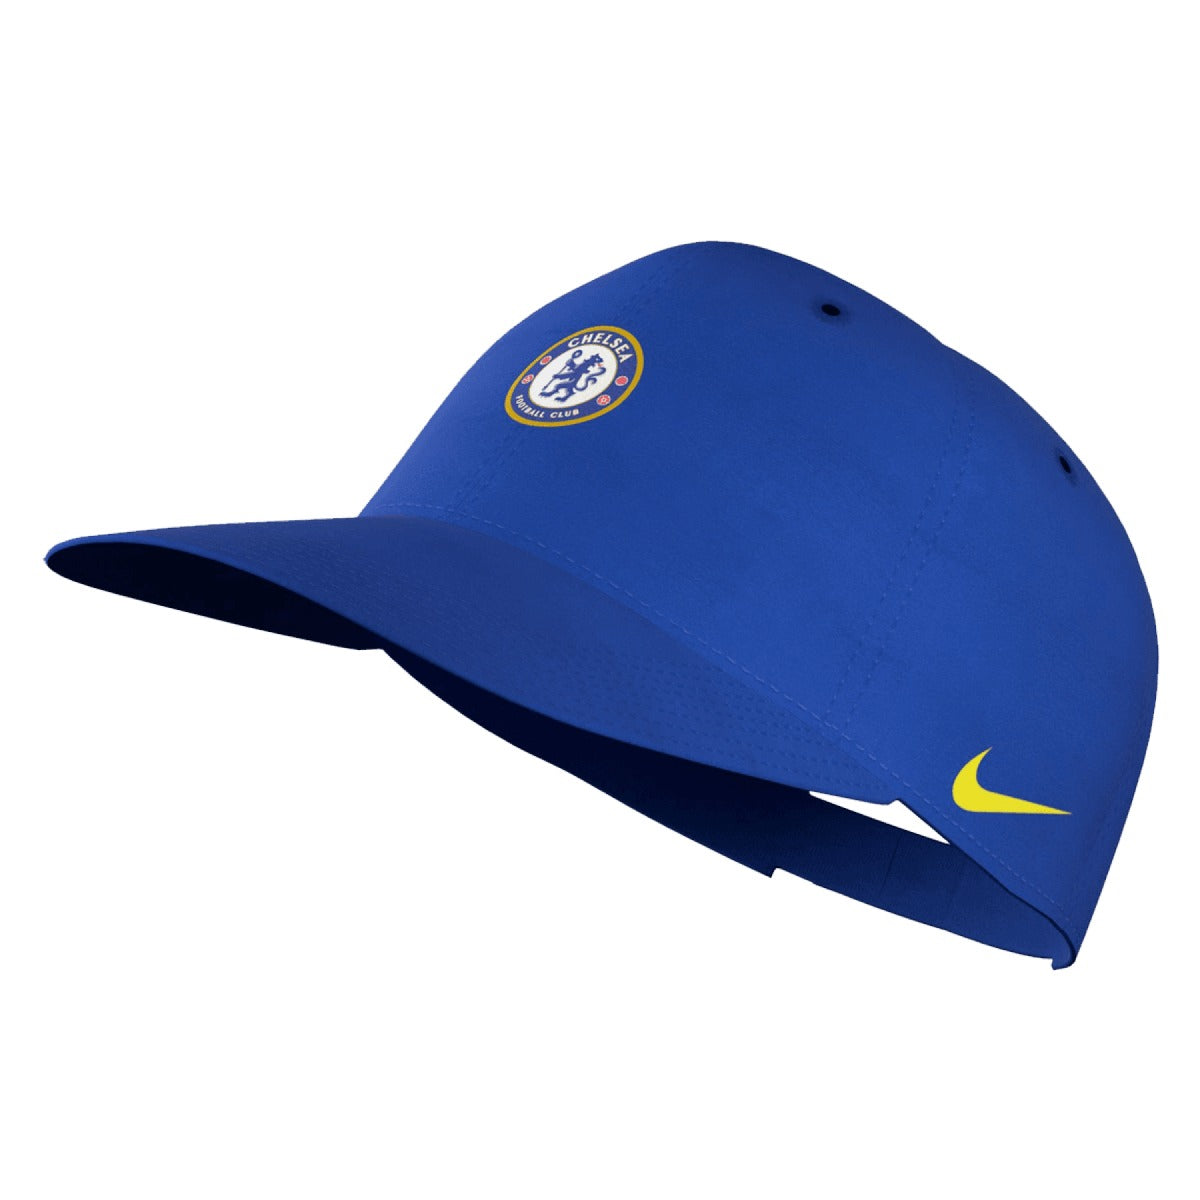 Nike 2021-22 Chelsea H86 Cap - Royal (Diagonal)